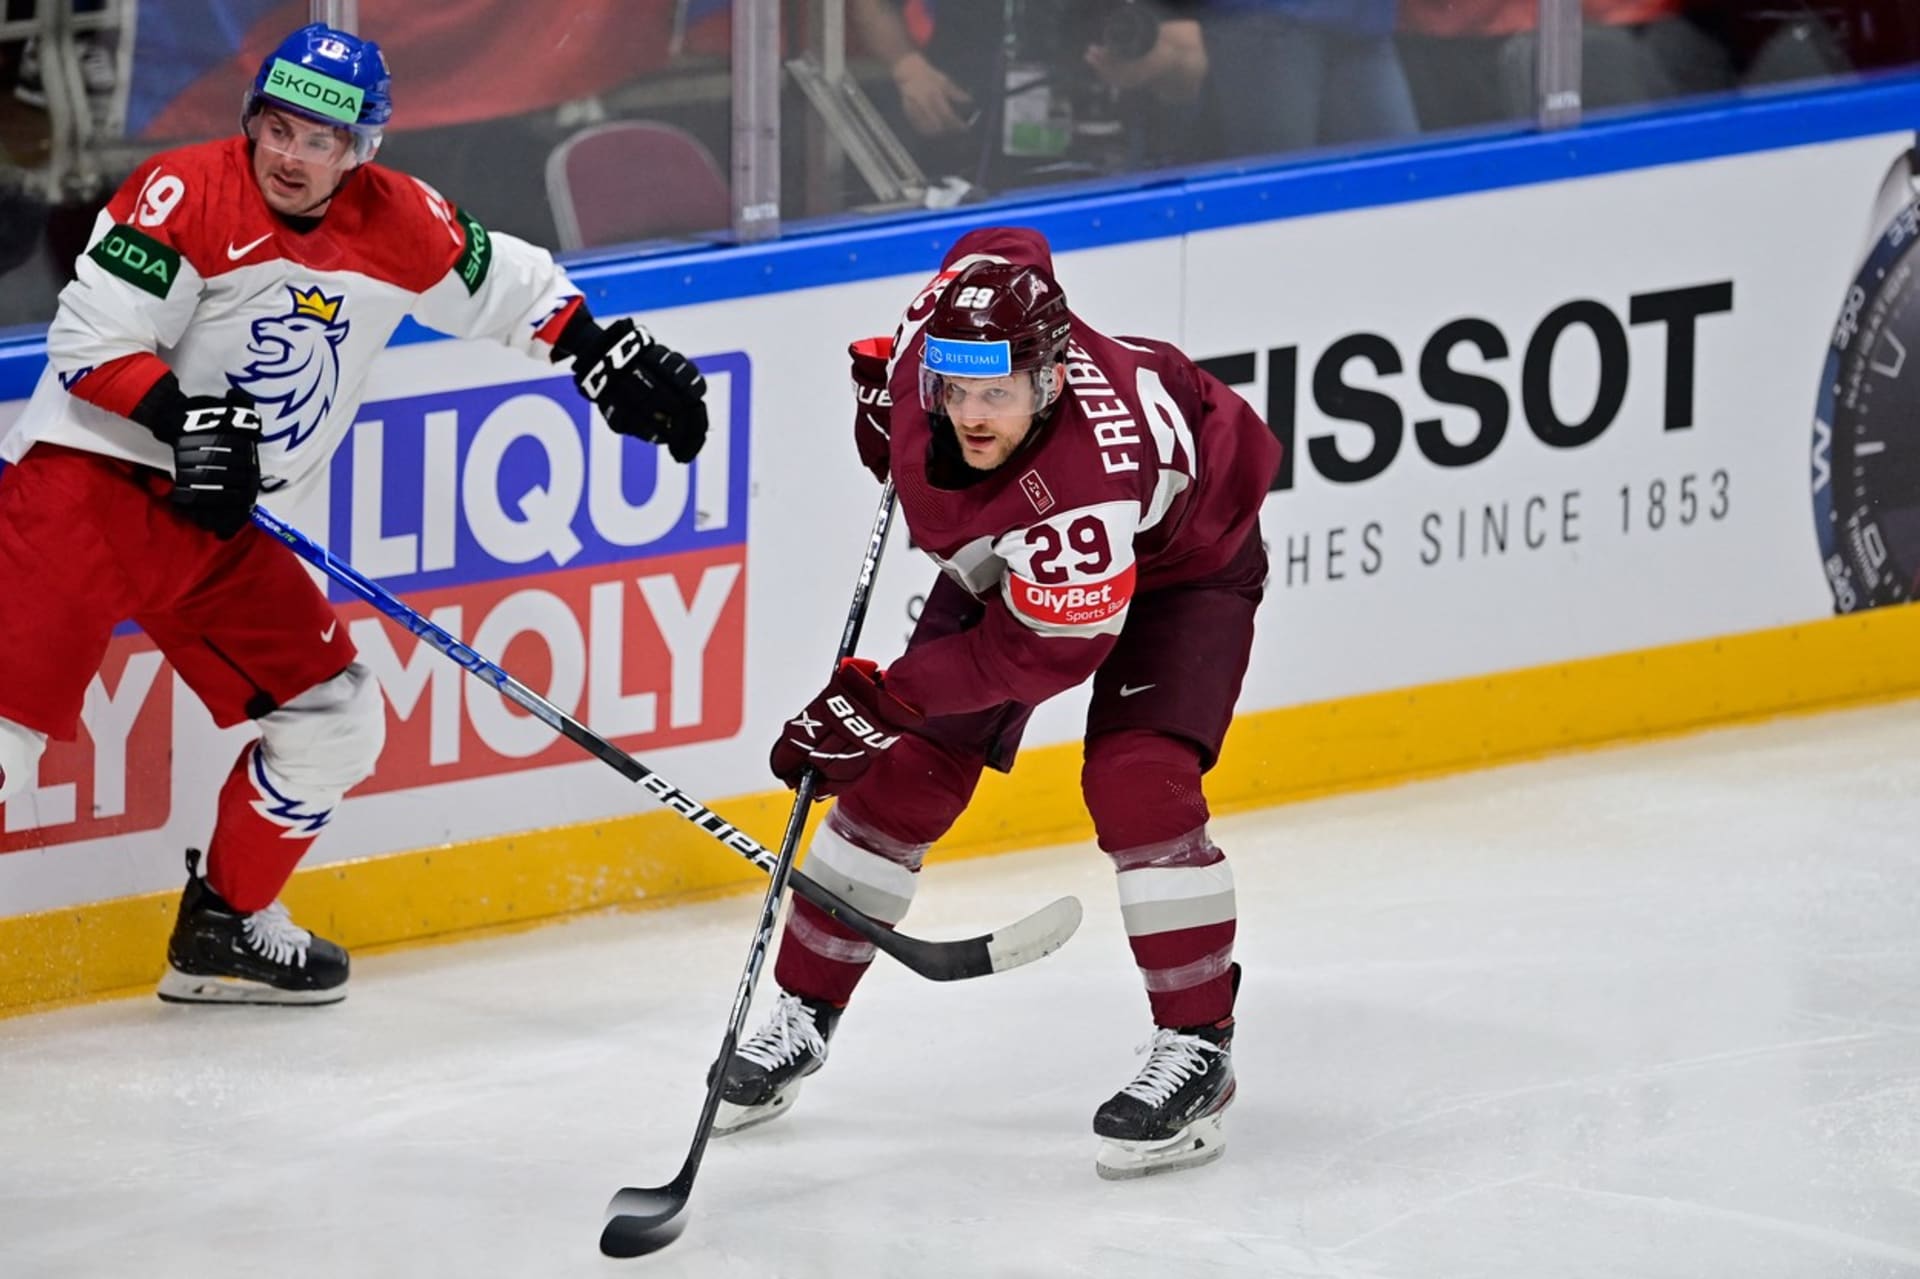 Lotyšský hokejista Ralfs Freibergs v utkání proti Česku v základní části MS v hokeji. Vlevo český útočník Jakub Flek.